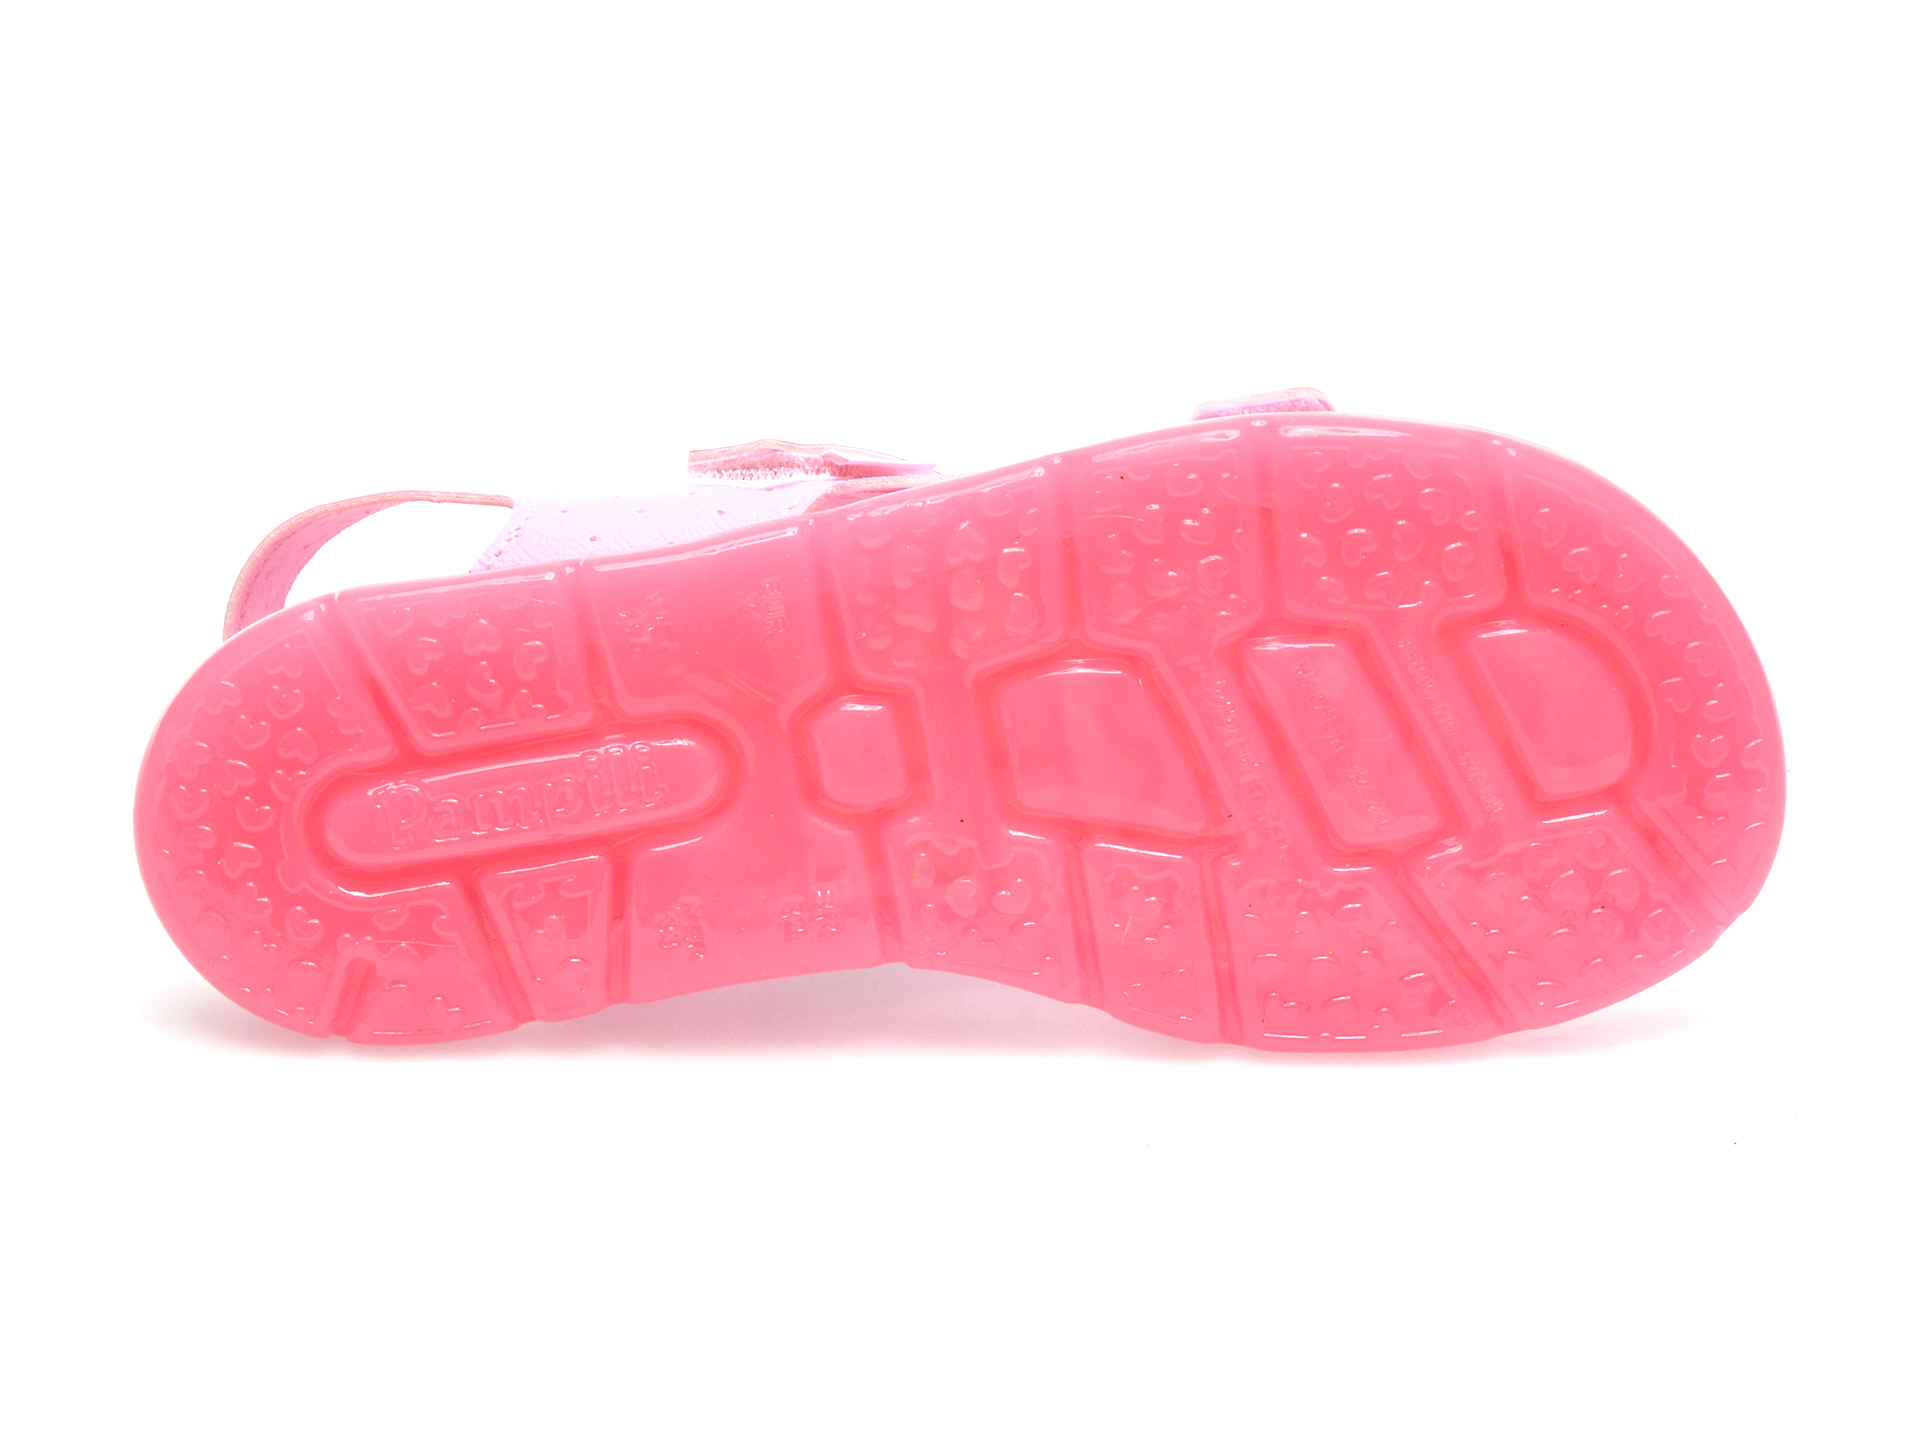 Sandale PAMPILI roz, 697005, din piele ecologica